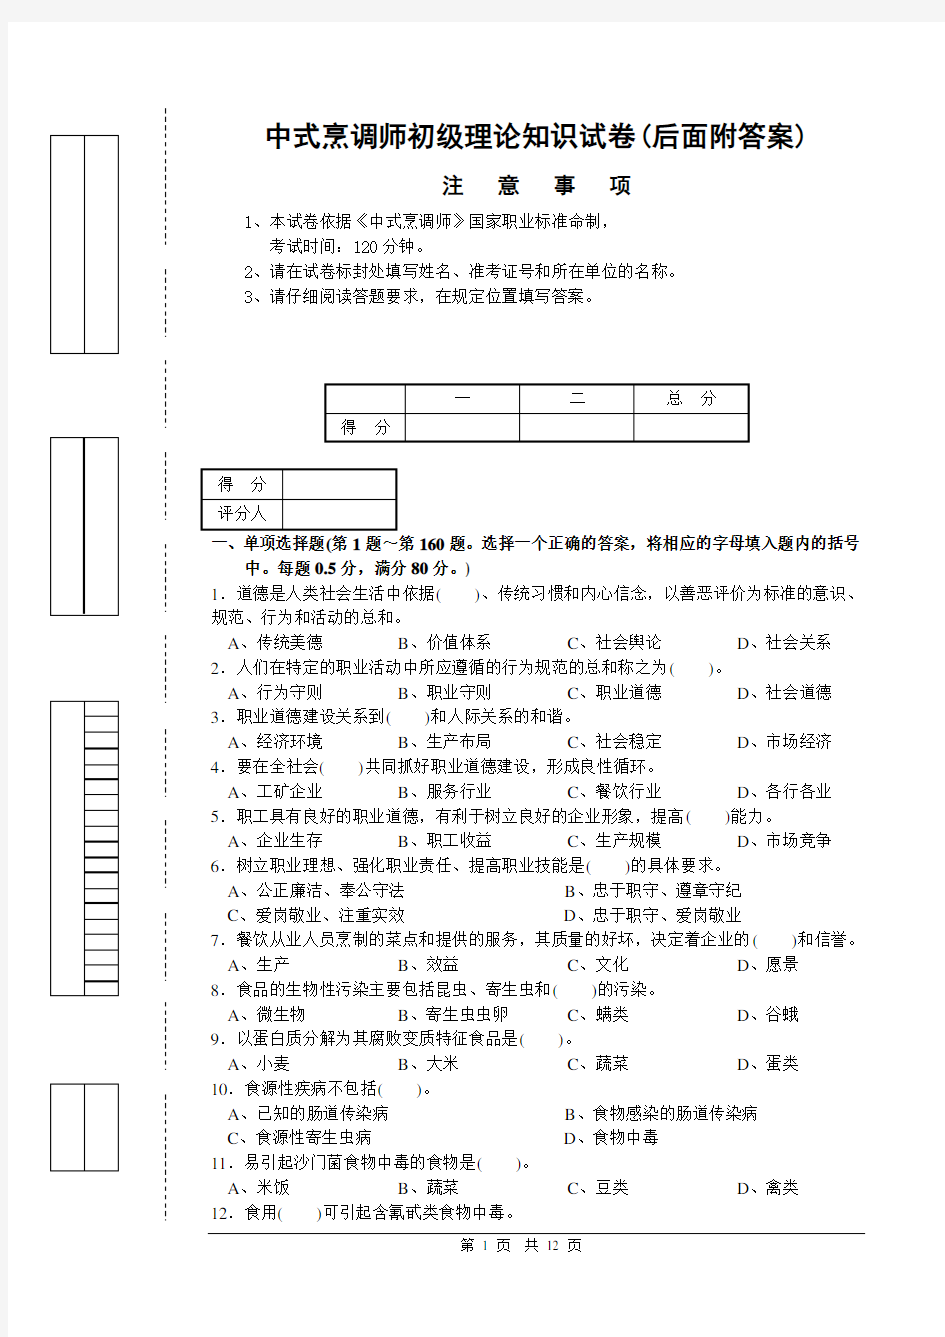 中式烹调师初级理论知识试卷1(后面附答案)